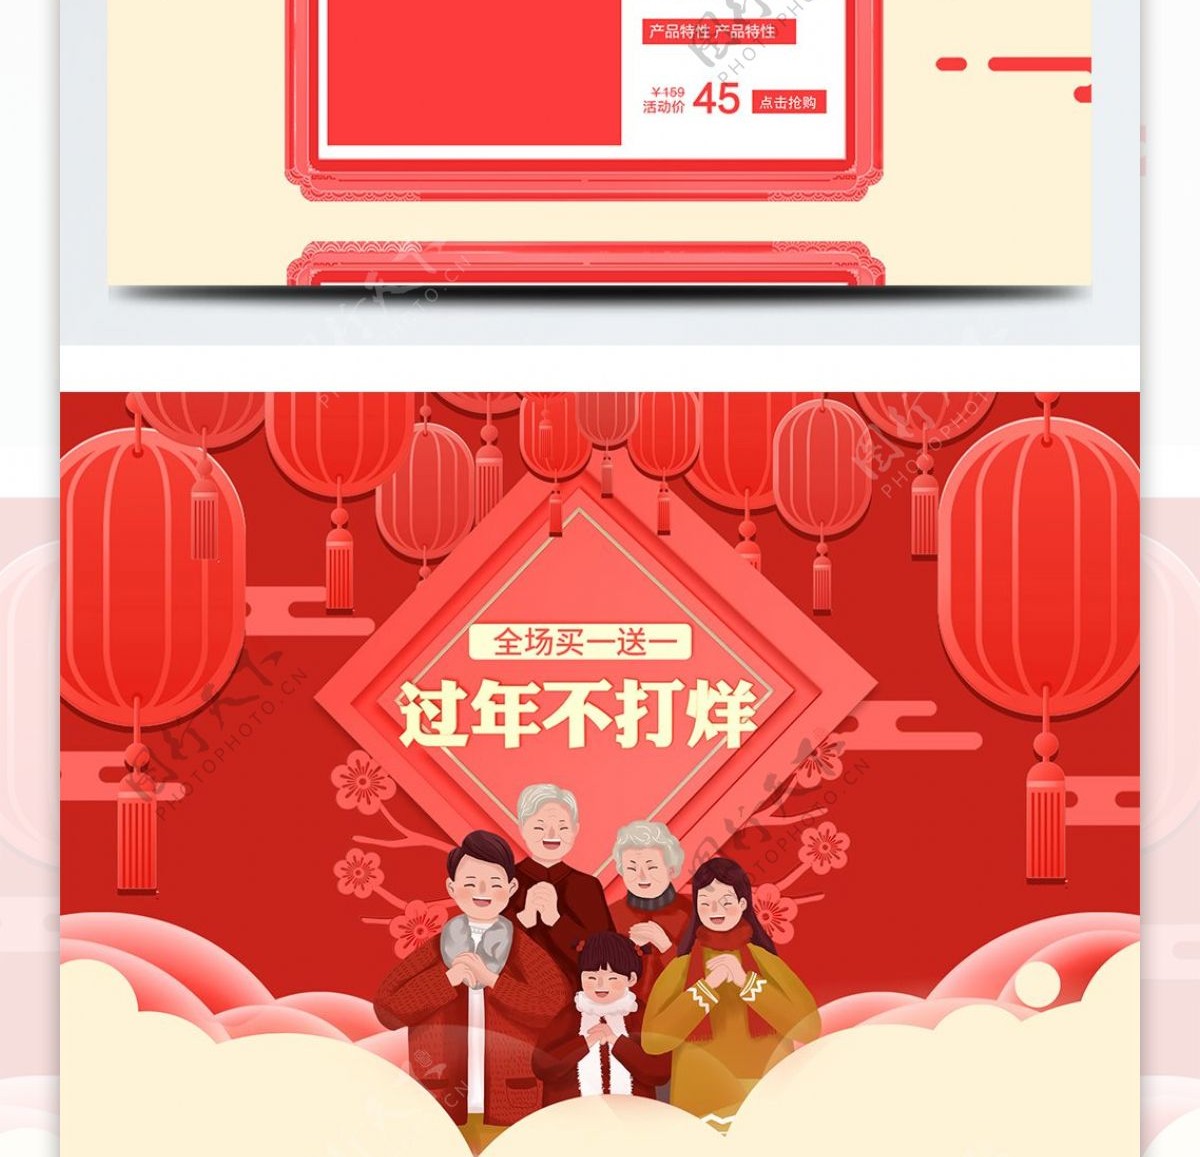 淘宝喜庆过年不打烊新年春节首页模板设计